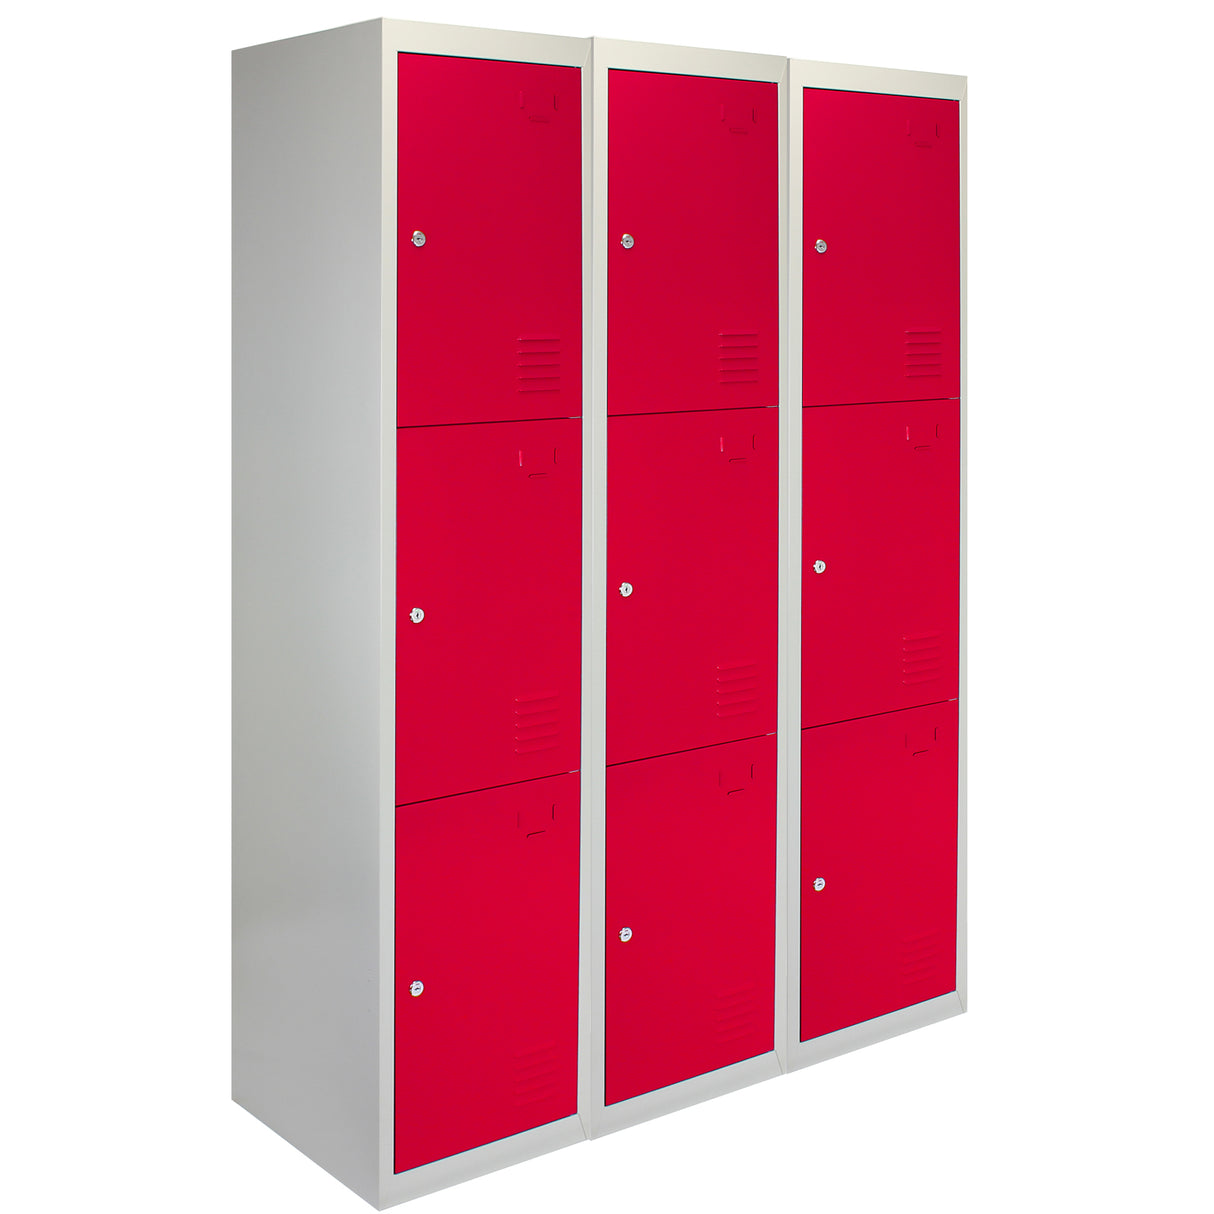 3 x casiers de rangement en métal - Trois portes, rouge - A plat